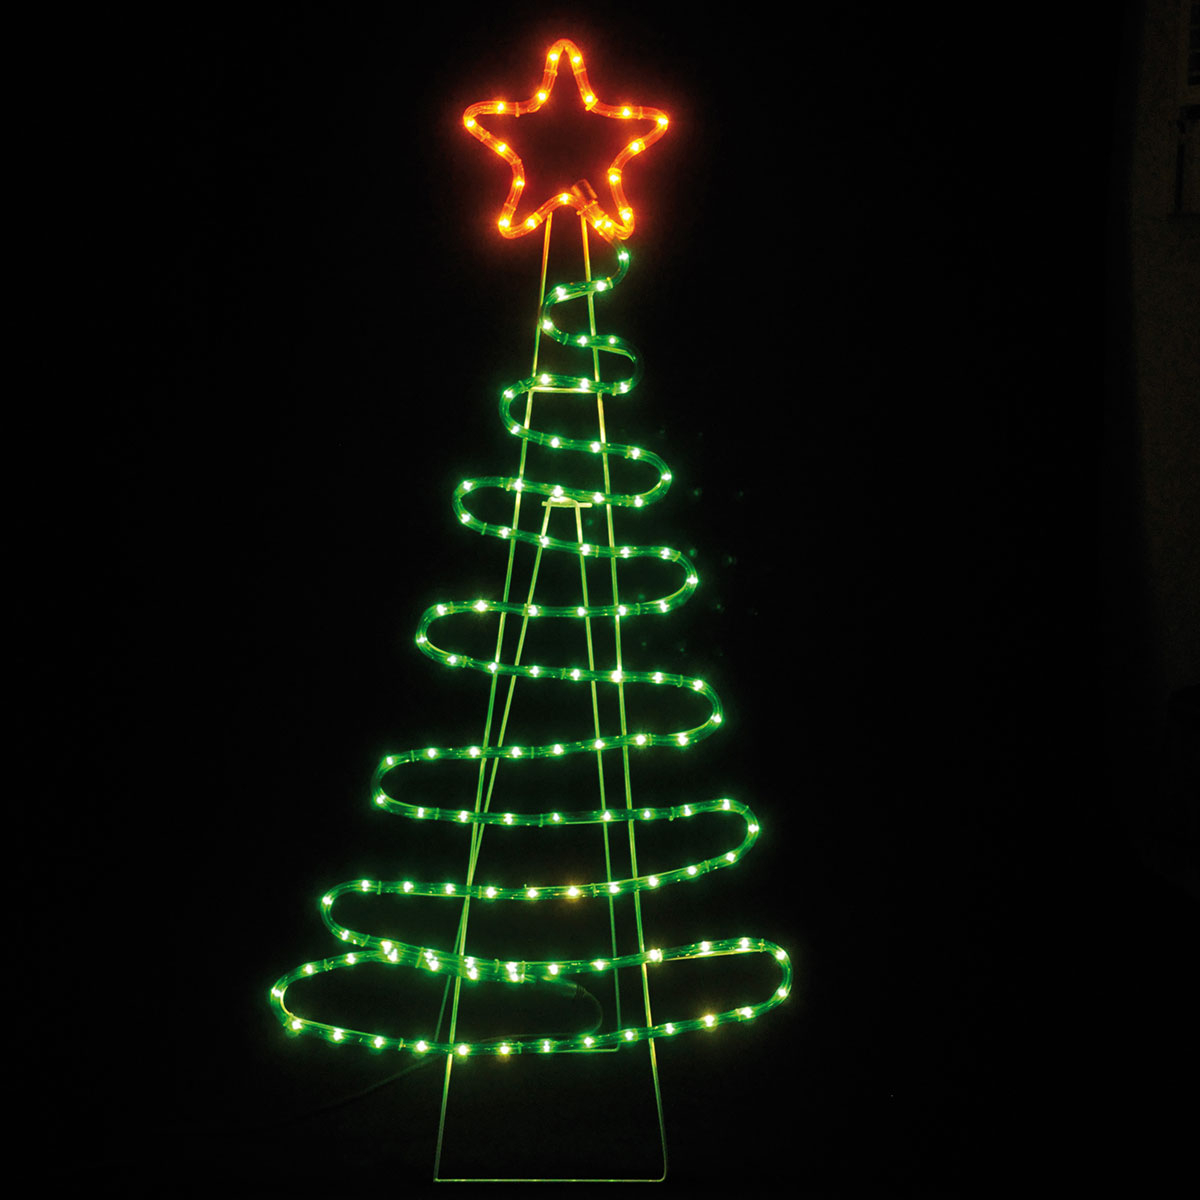 Χριστουγεννιάτικο Δέντρο Φωτοσωλήνας Με 120 Led Φωτάκια & Προγράμματα (51×112) Eurolamp 600-20013